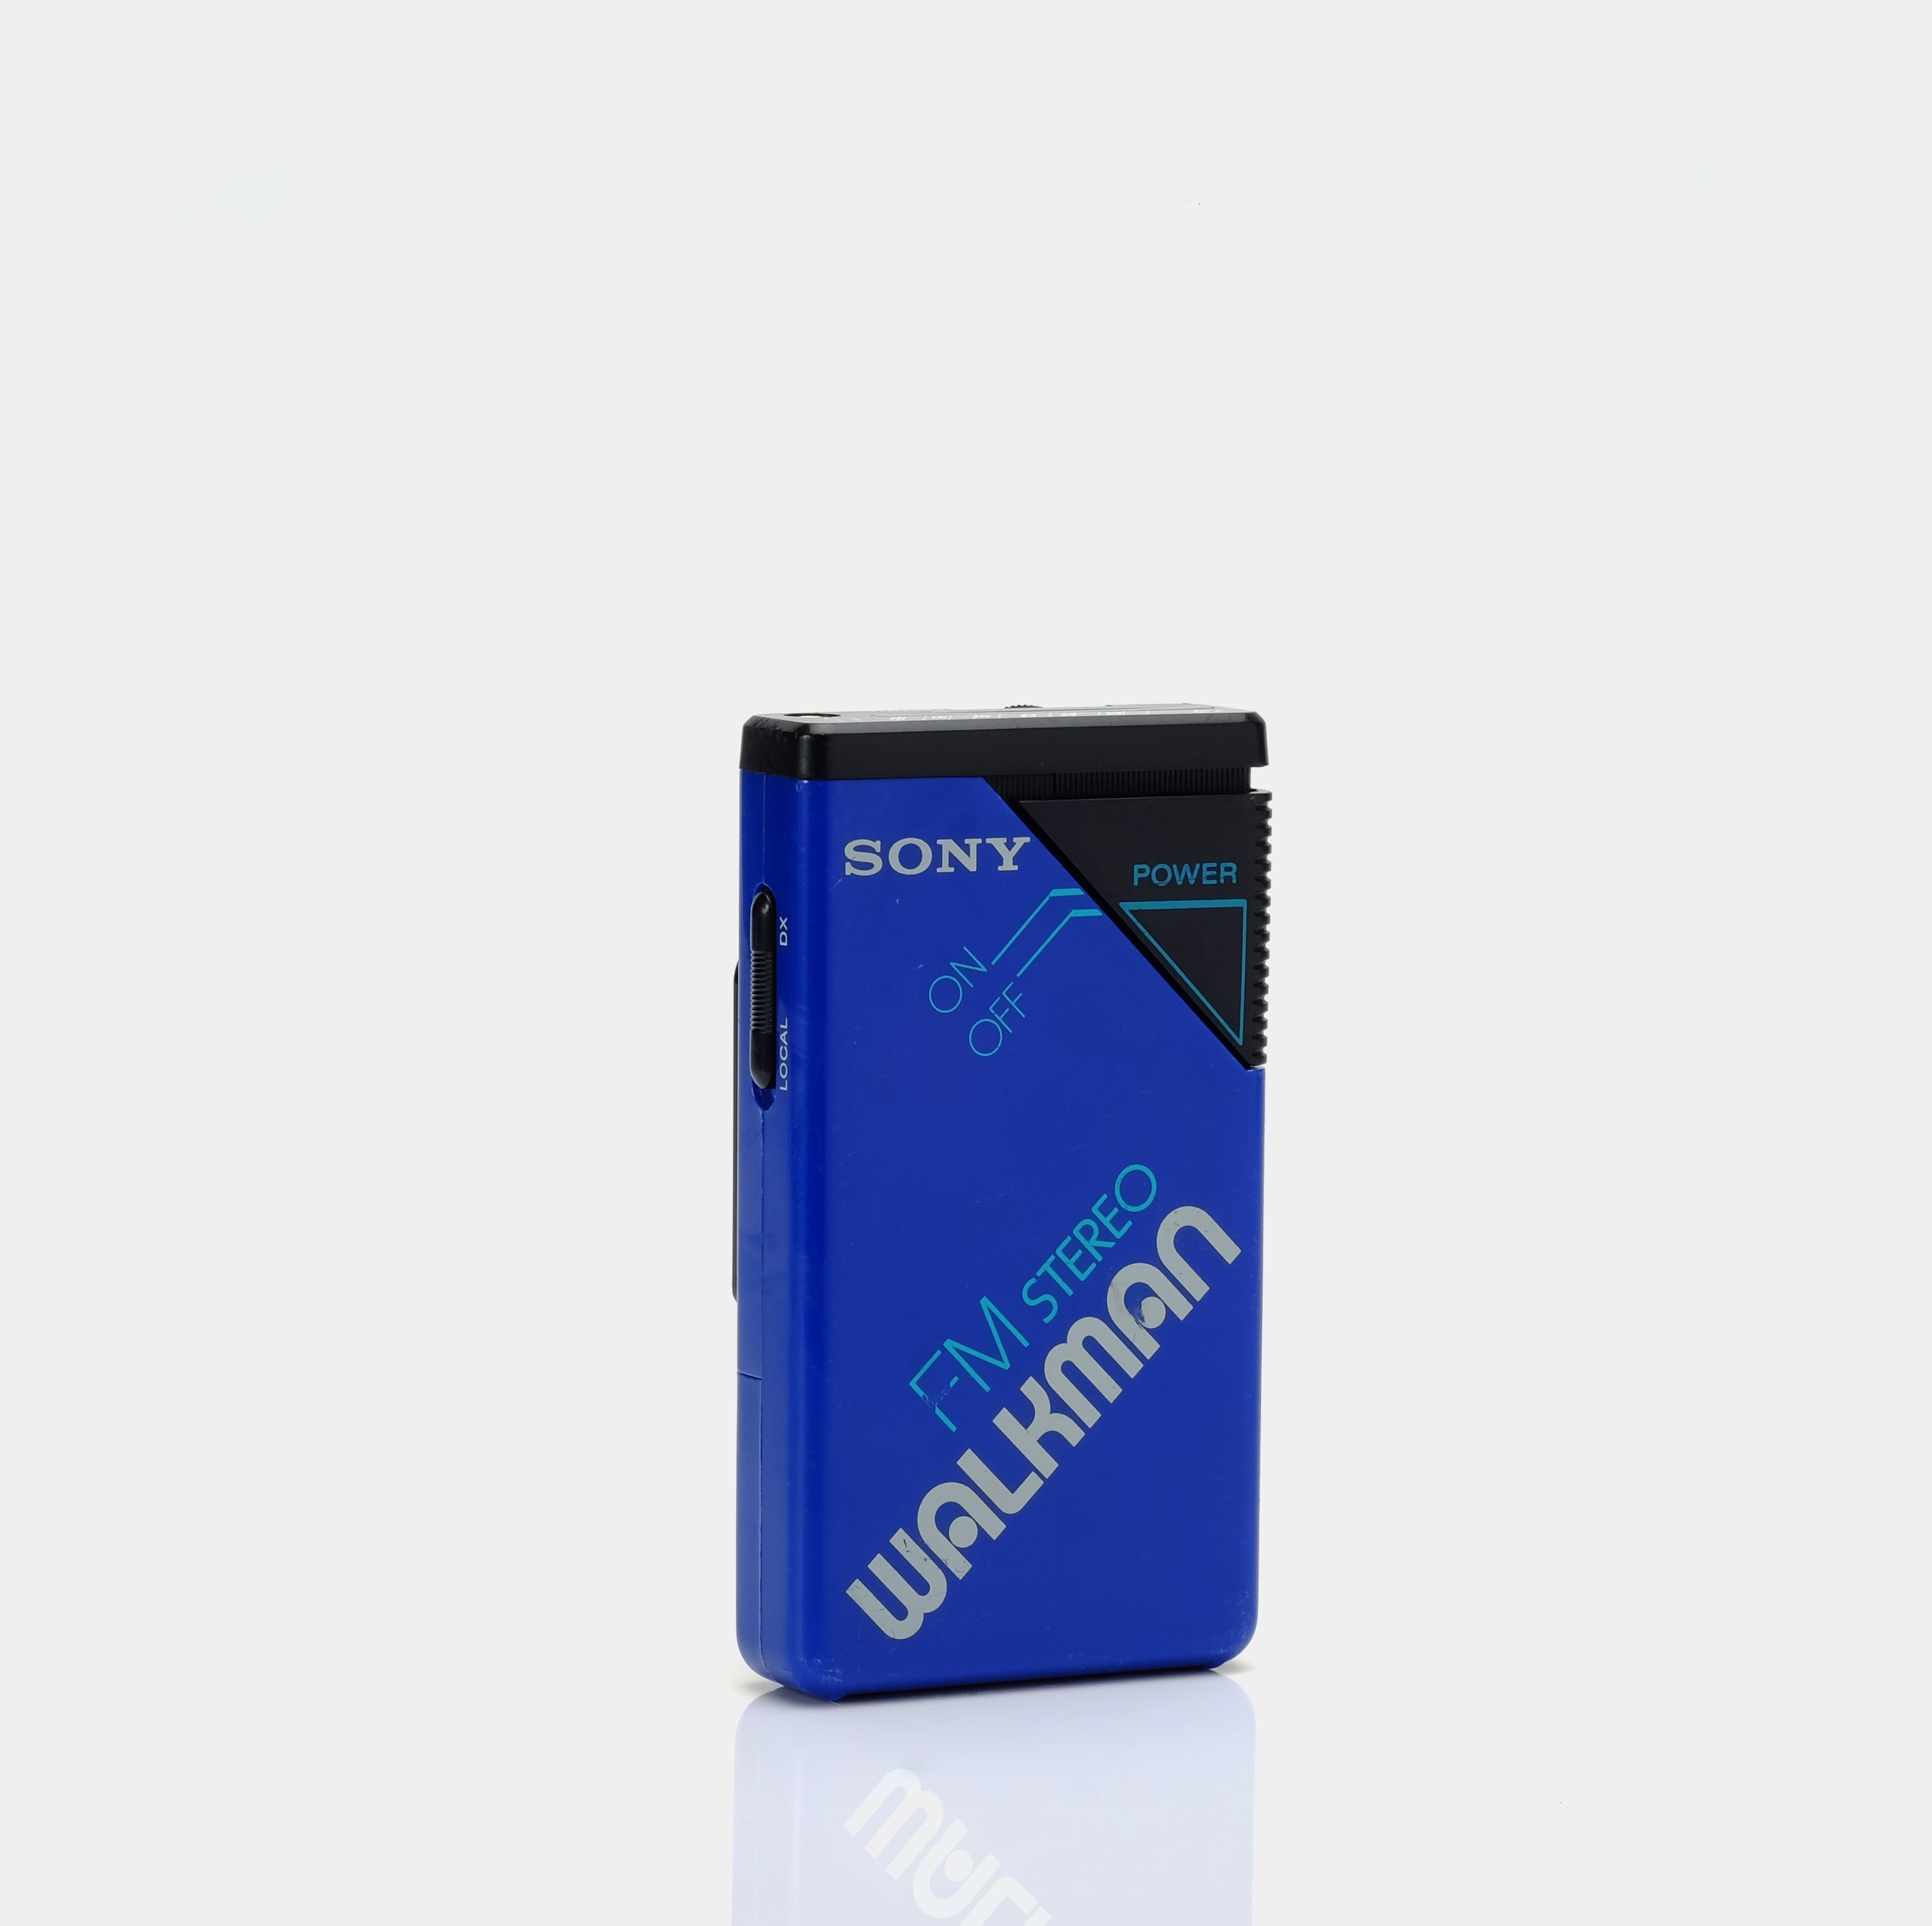 Sony SRF-20W FM Portable Radio